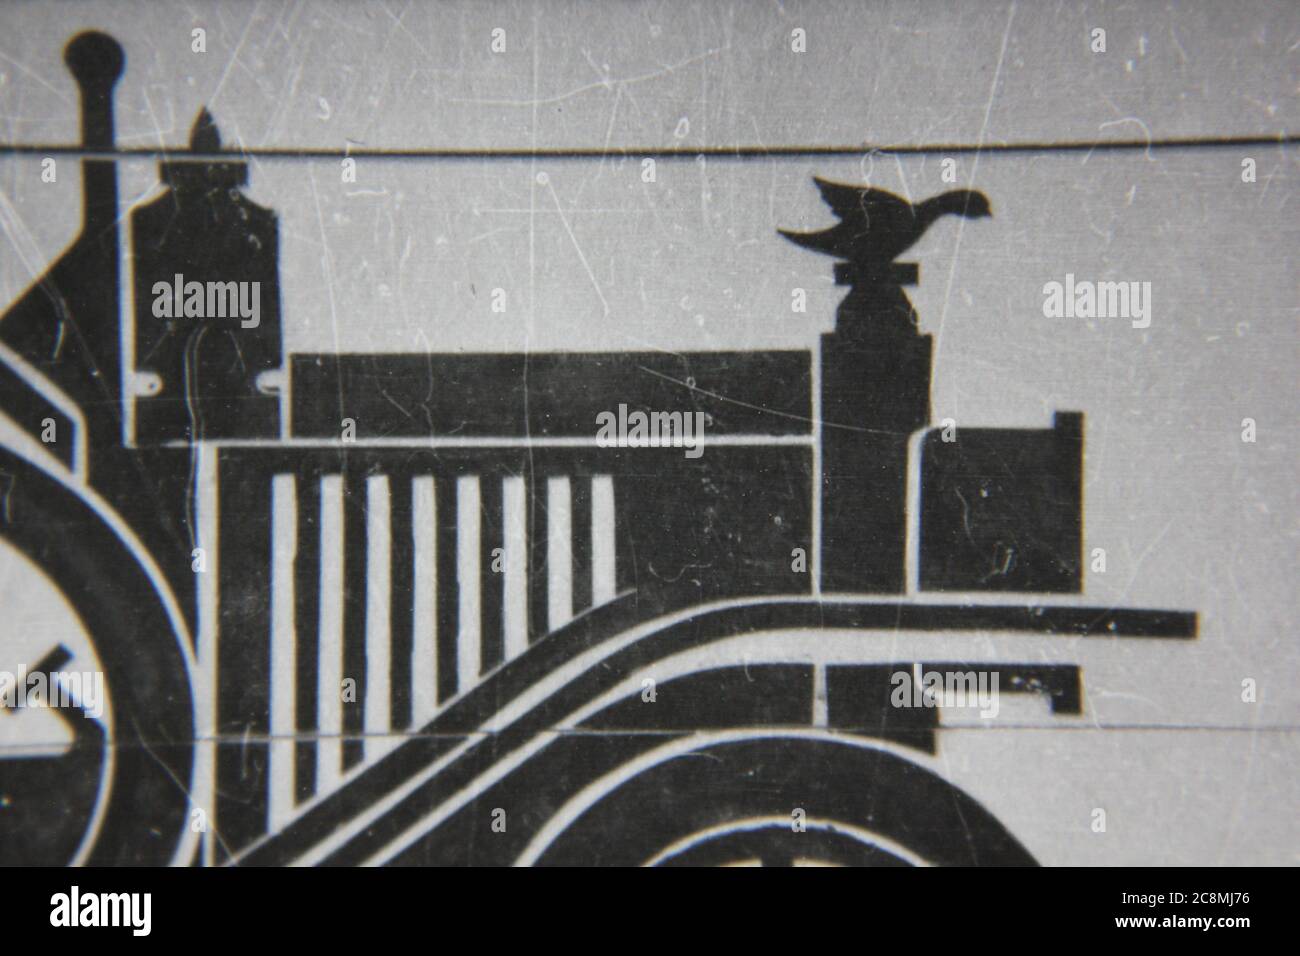 Feine 70er Jahre Vintage schwarz-weiß Lifestyle-Fotografie des Profils eines Modells t ford auf einem Garagentor, Zinn lizzie, Jitney, flivver, springende Lena. Stockfoto